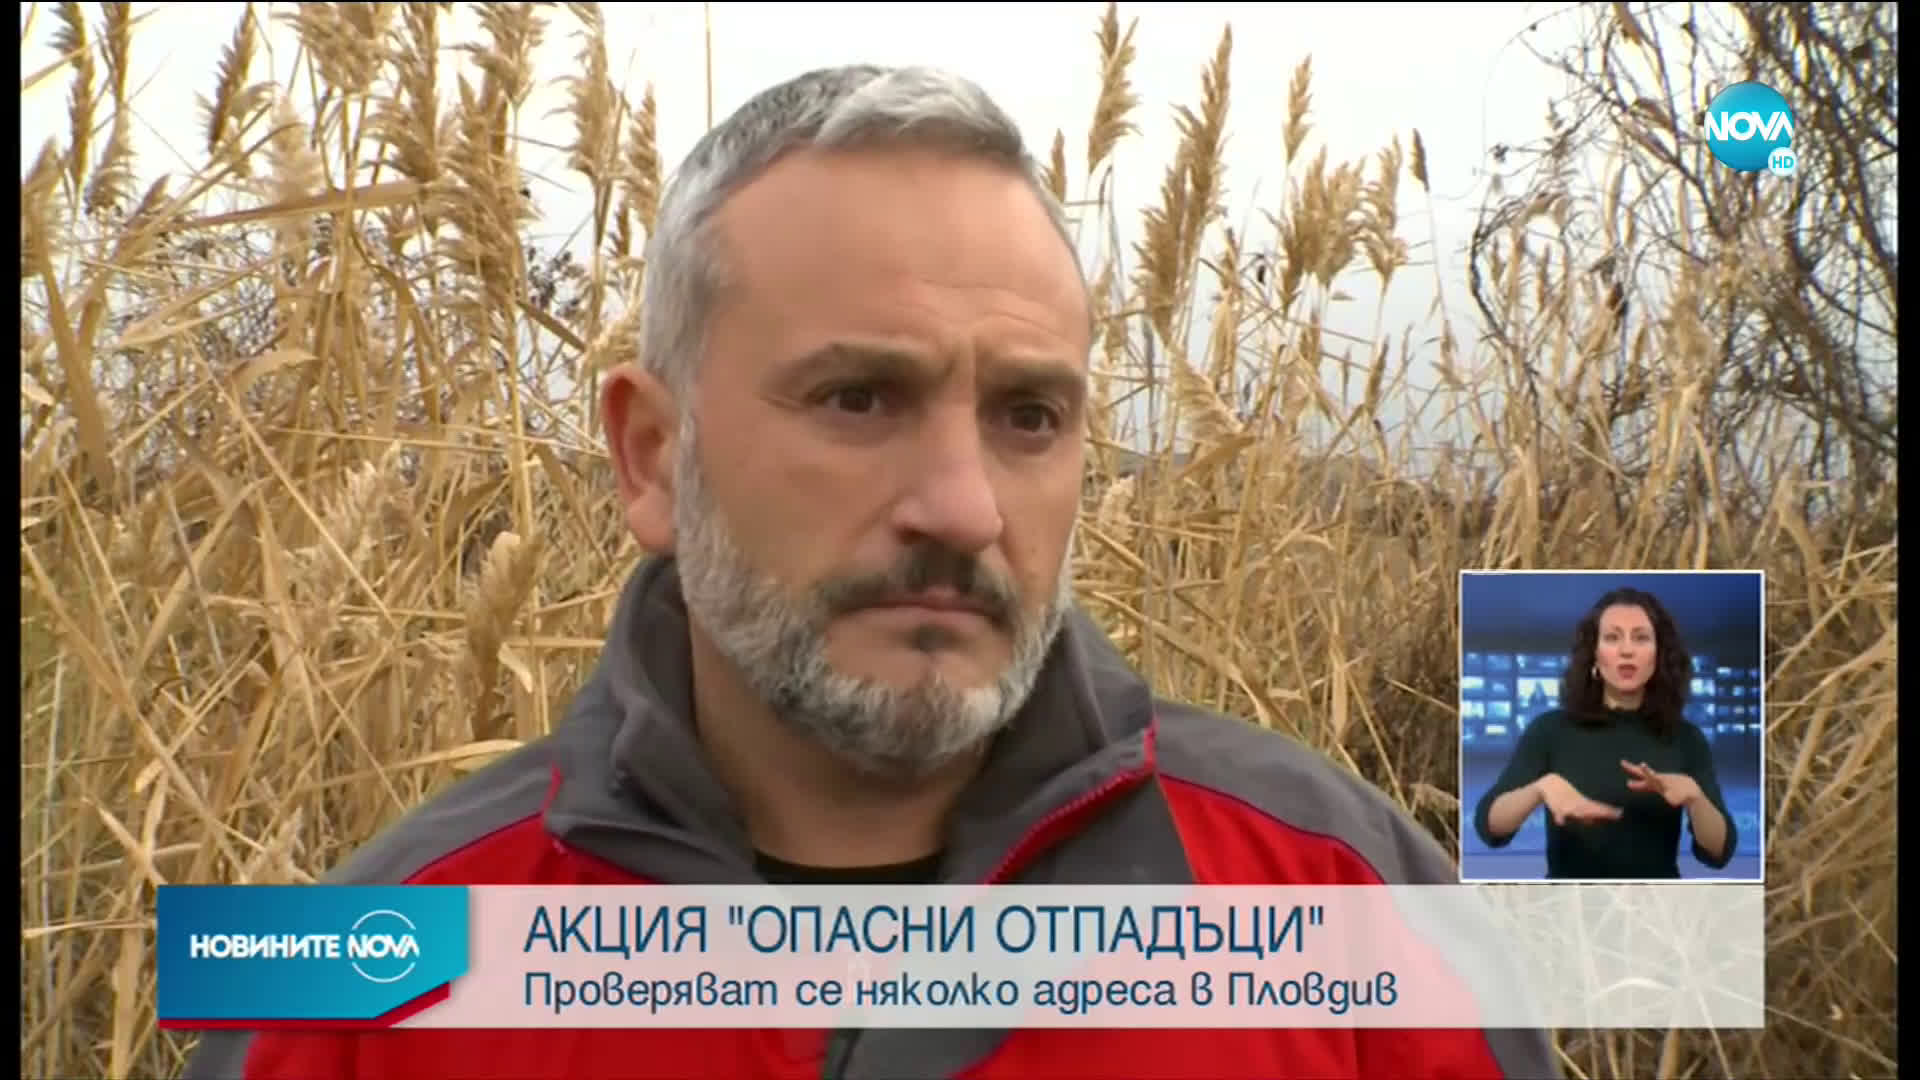 АКЦИЯ „ОПАСНИ ОТПАДЪЦИ”: Намериха над 200 тона шлака край Пловдив